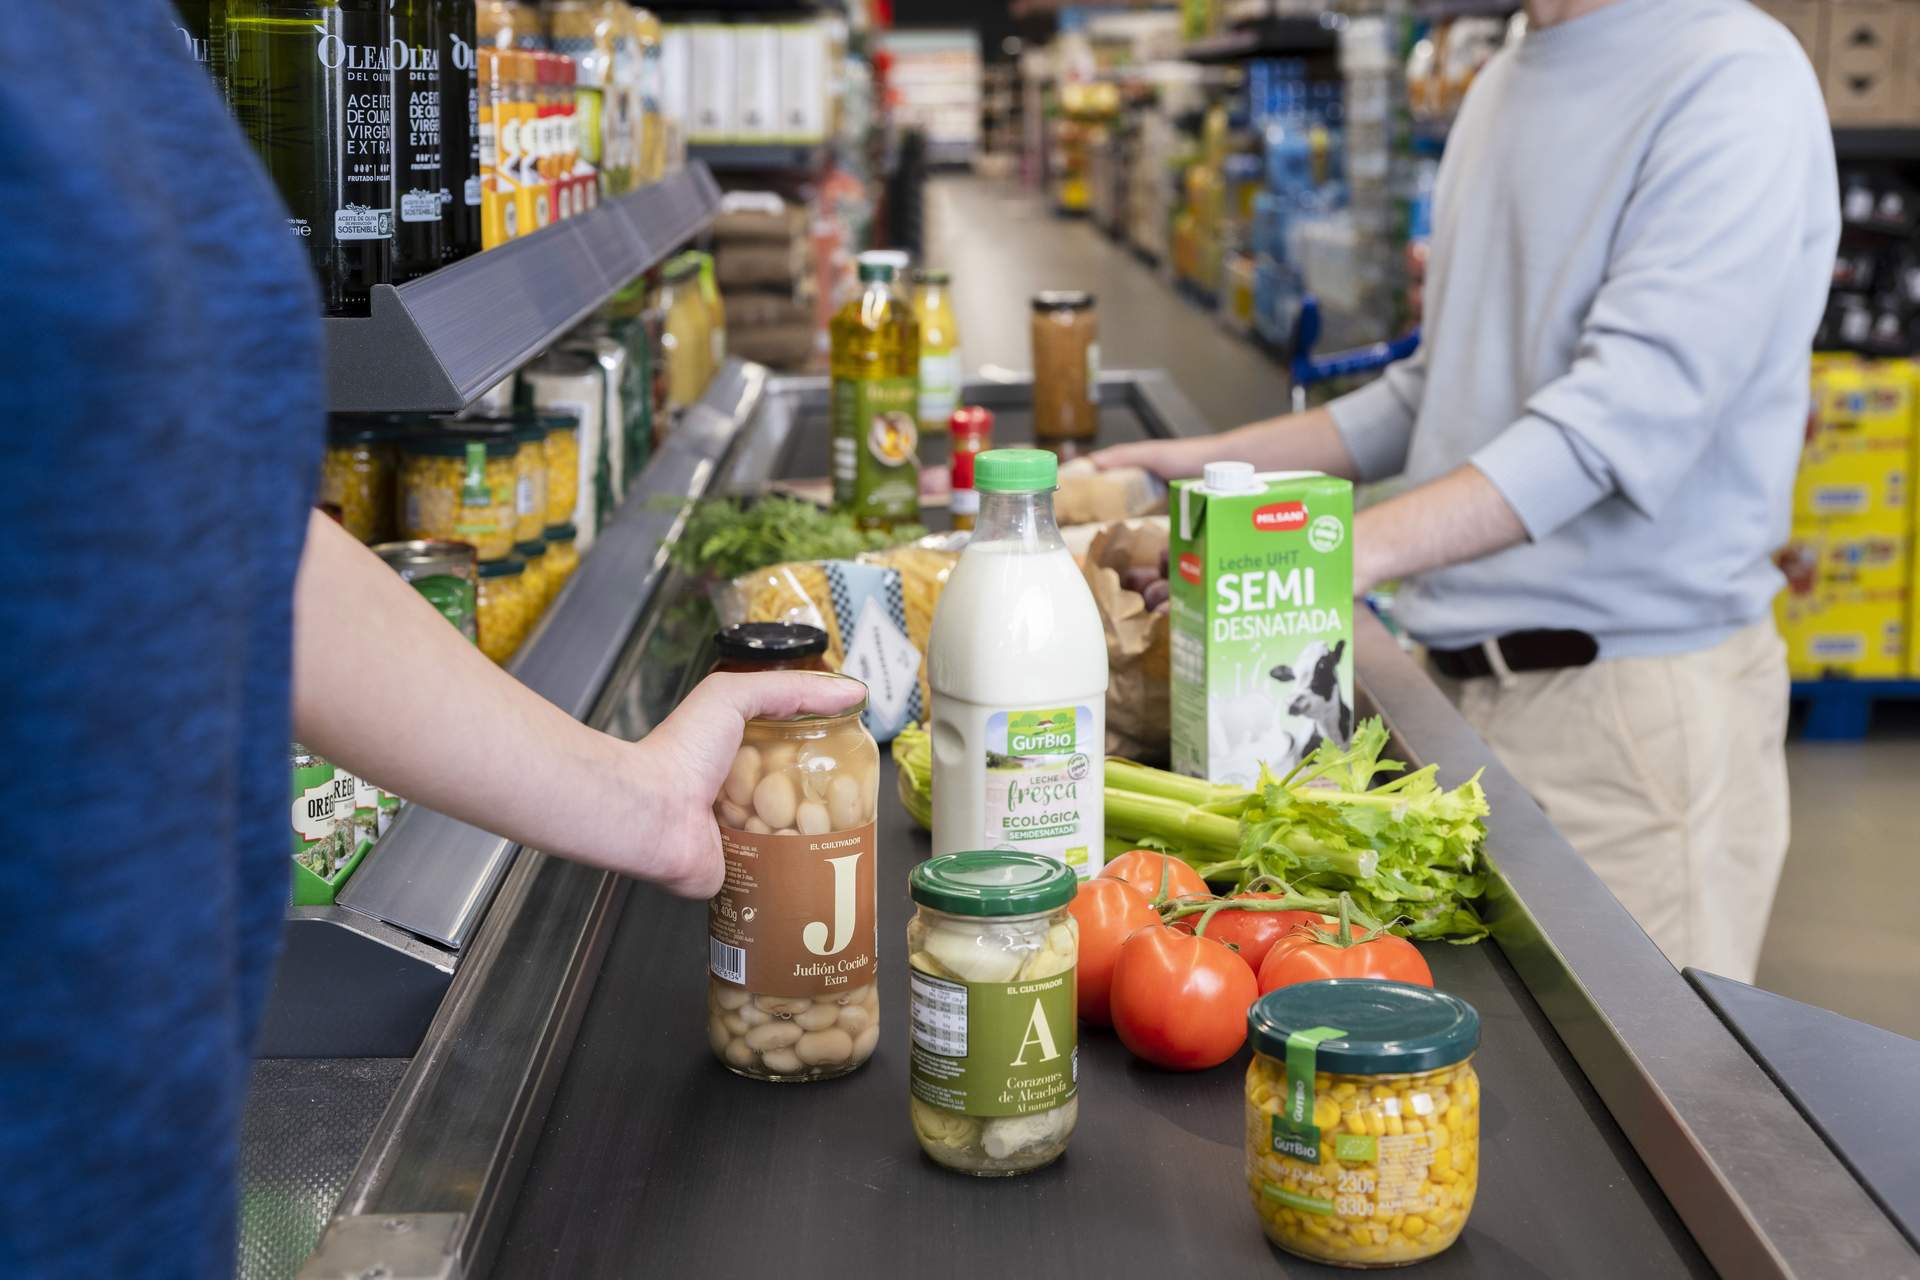 Las tarjetas de fidelización de los supermercados ya suponen 86 euros de ahorro al mes. Foto: Europa Press